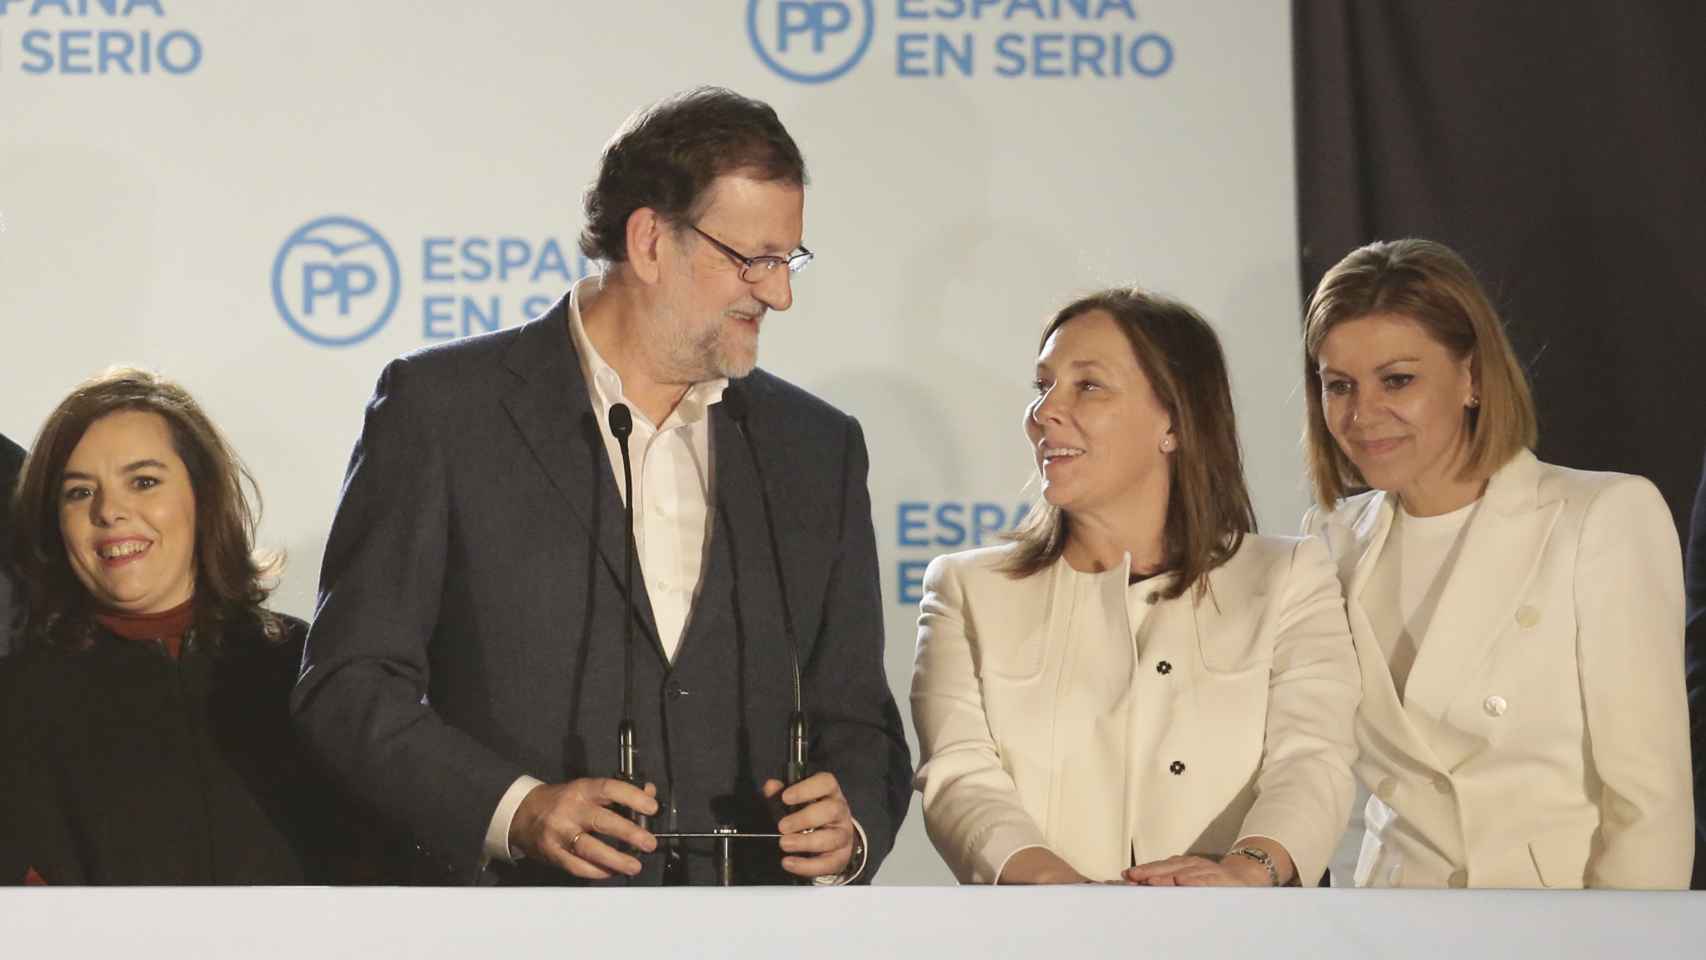 Rajoy y Elvira se han mirado embelesados varias veces